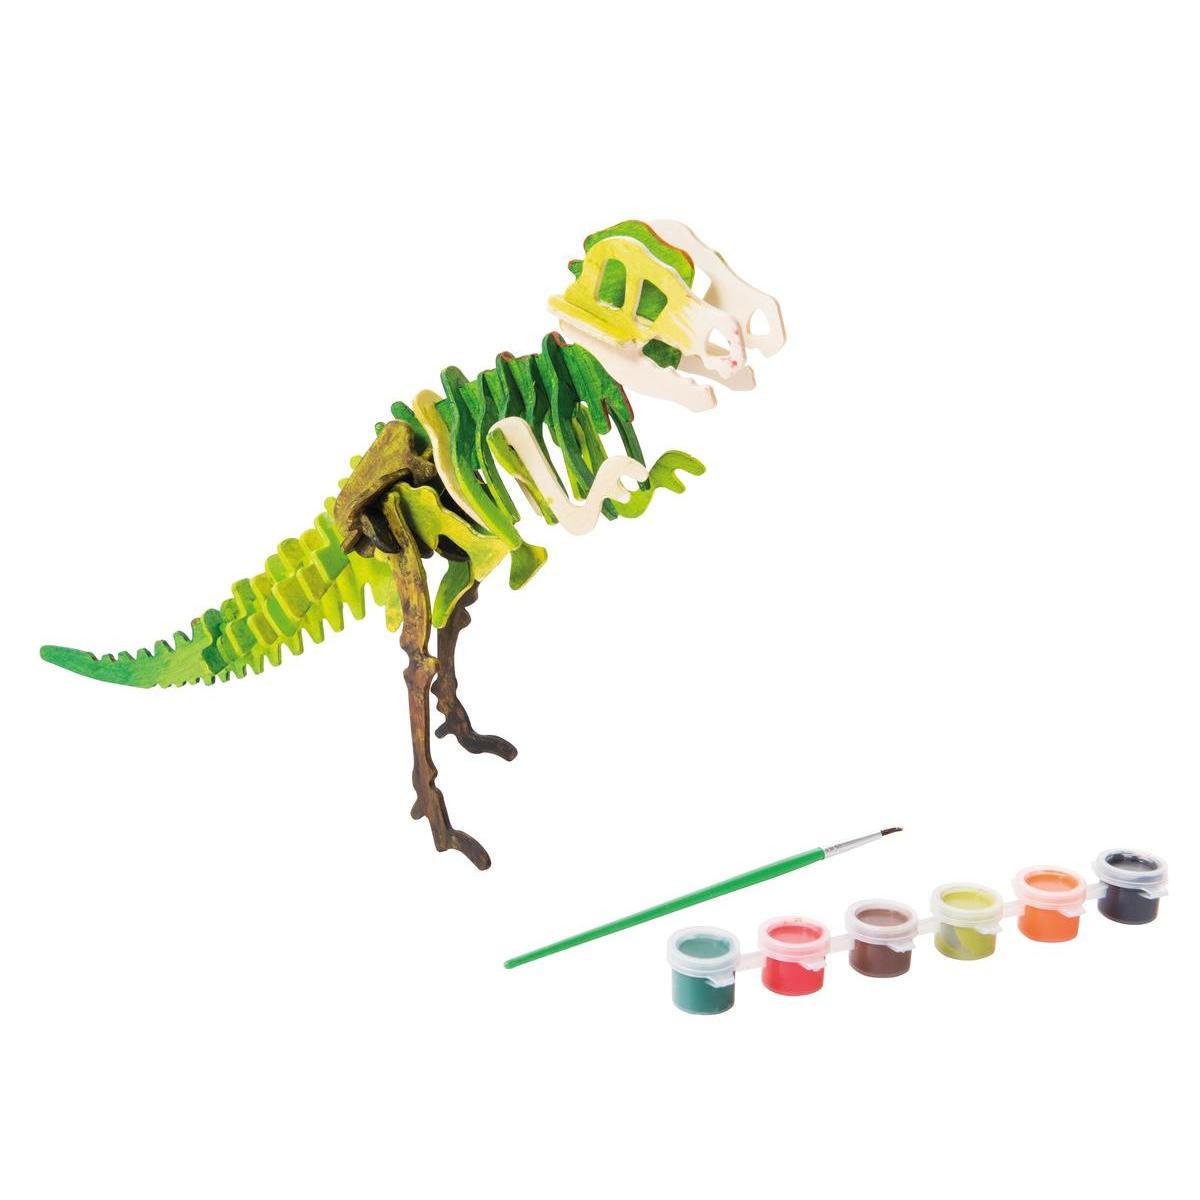 Maquette dinosaure à peindre - 26,5 x 27,5 x H 66 cm - Beige